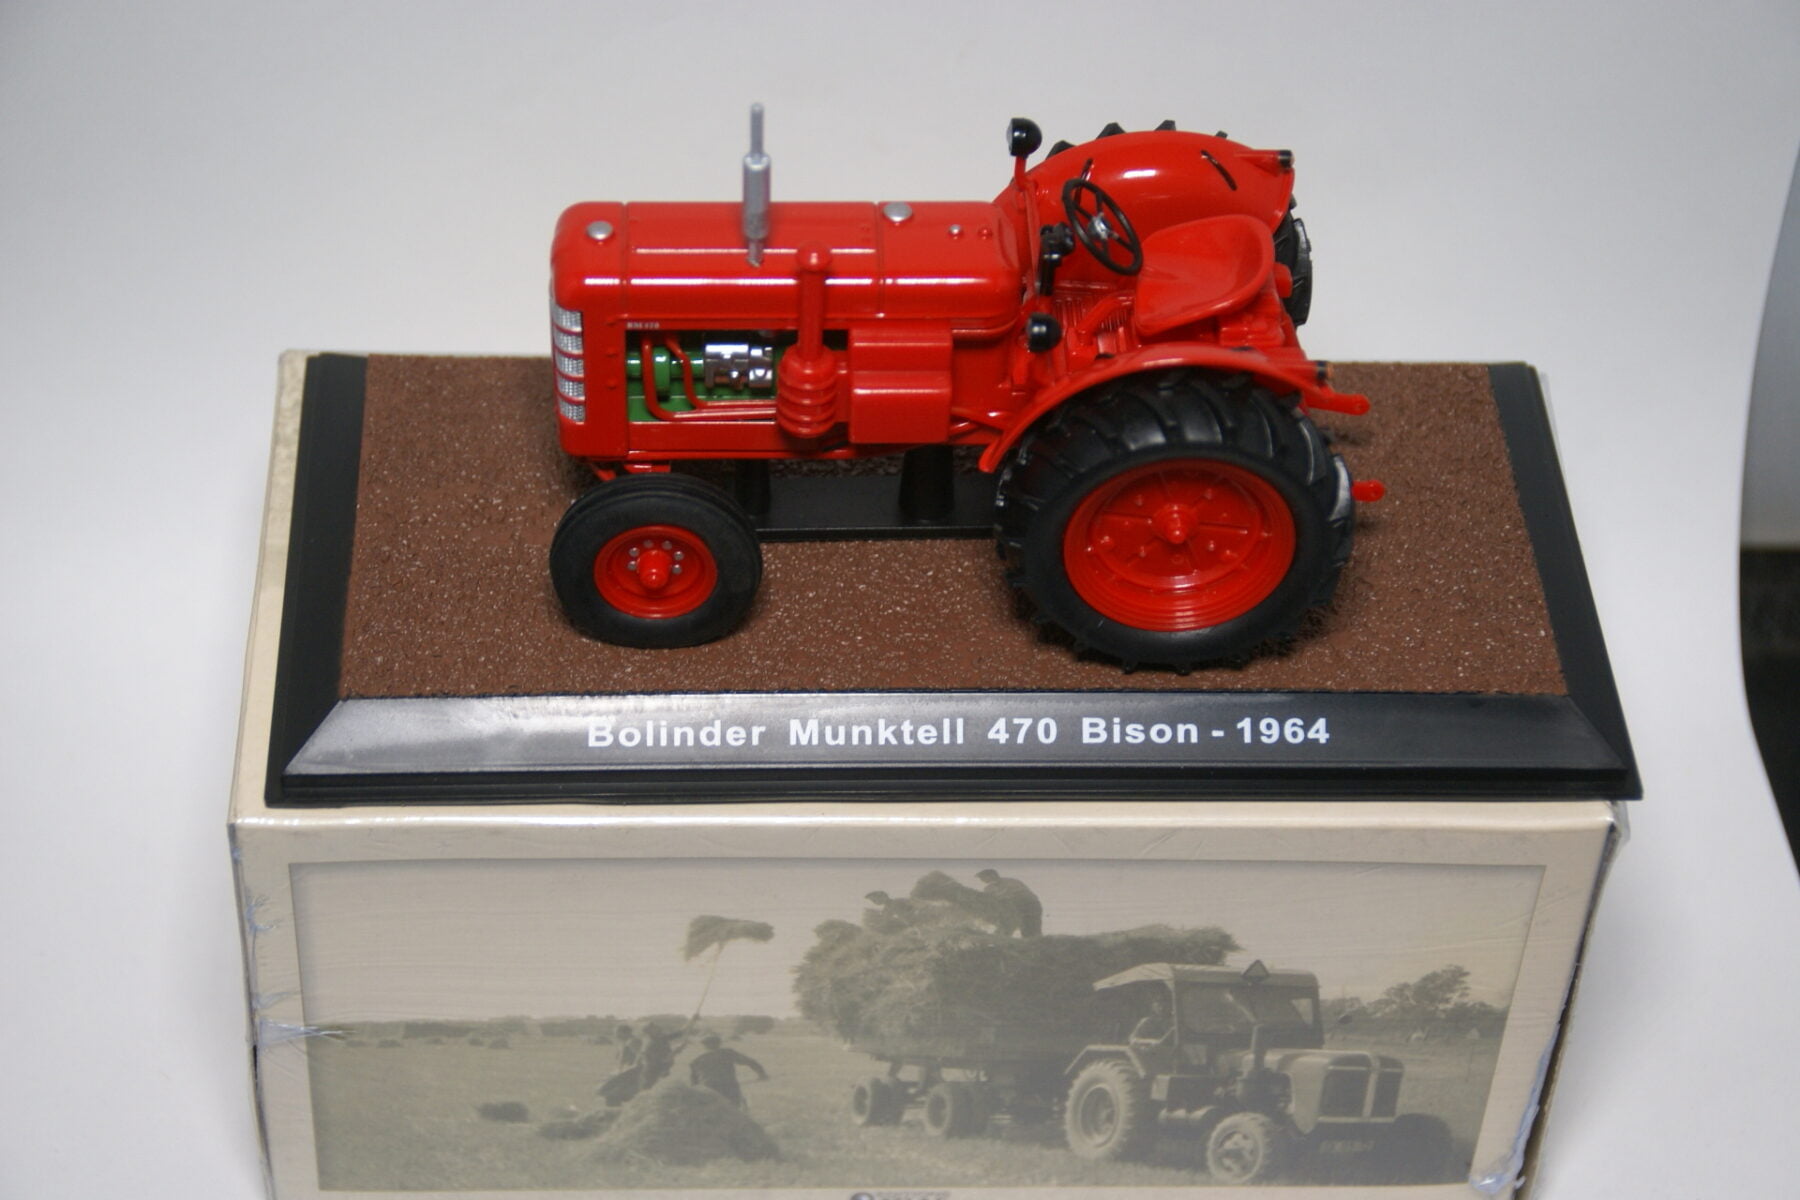 DSC01178 miniatuur 1964 Volvo tractor Bolinder Munktell 470 Bison rood 1op43 Atlas 5017005 nieuw